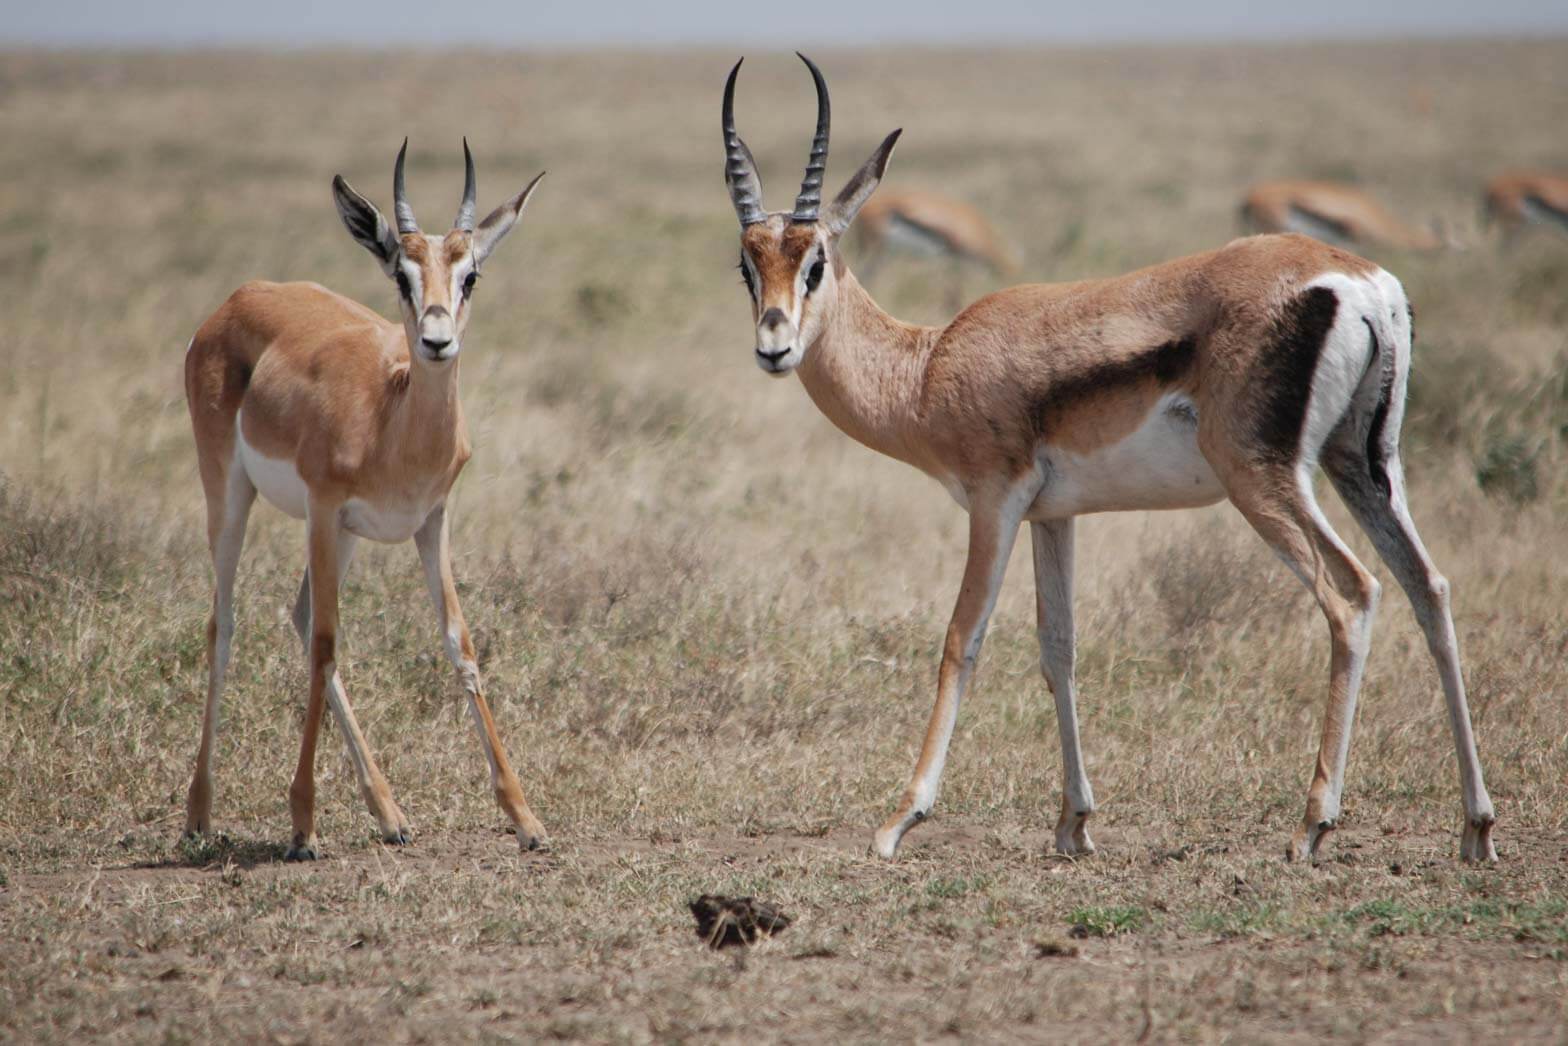 Wildlife in the Serengeti